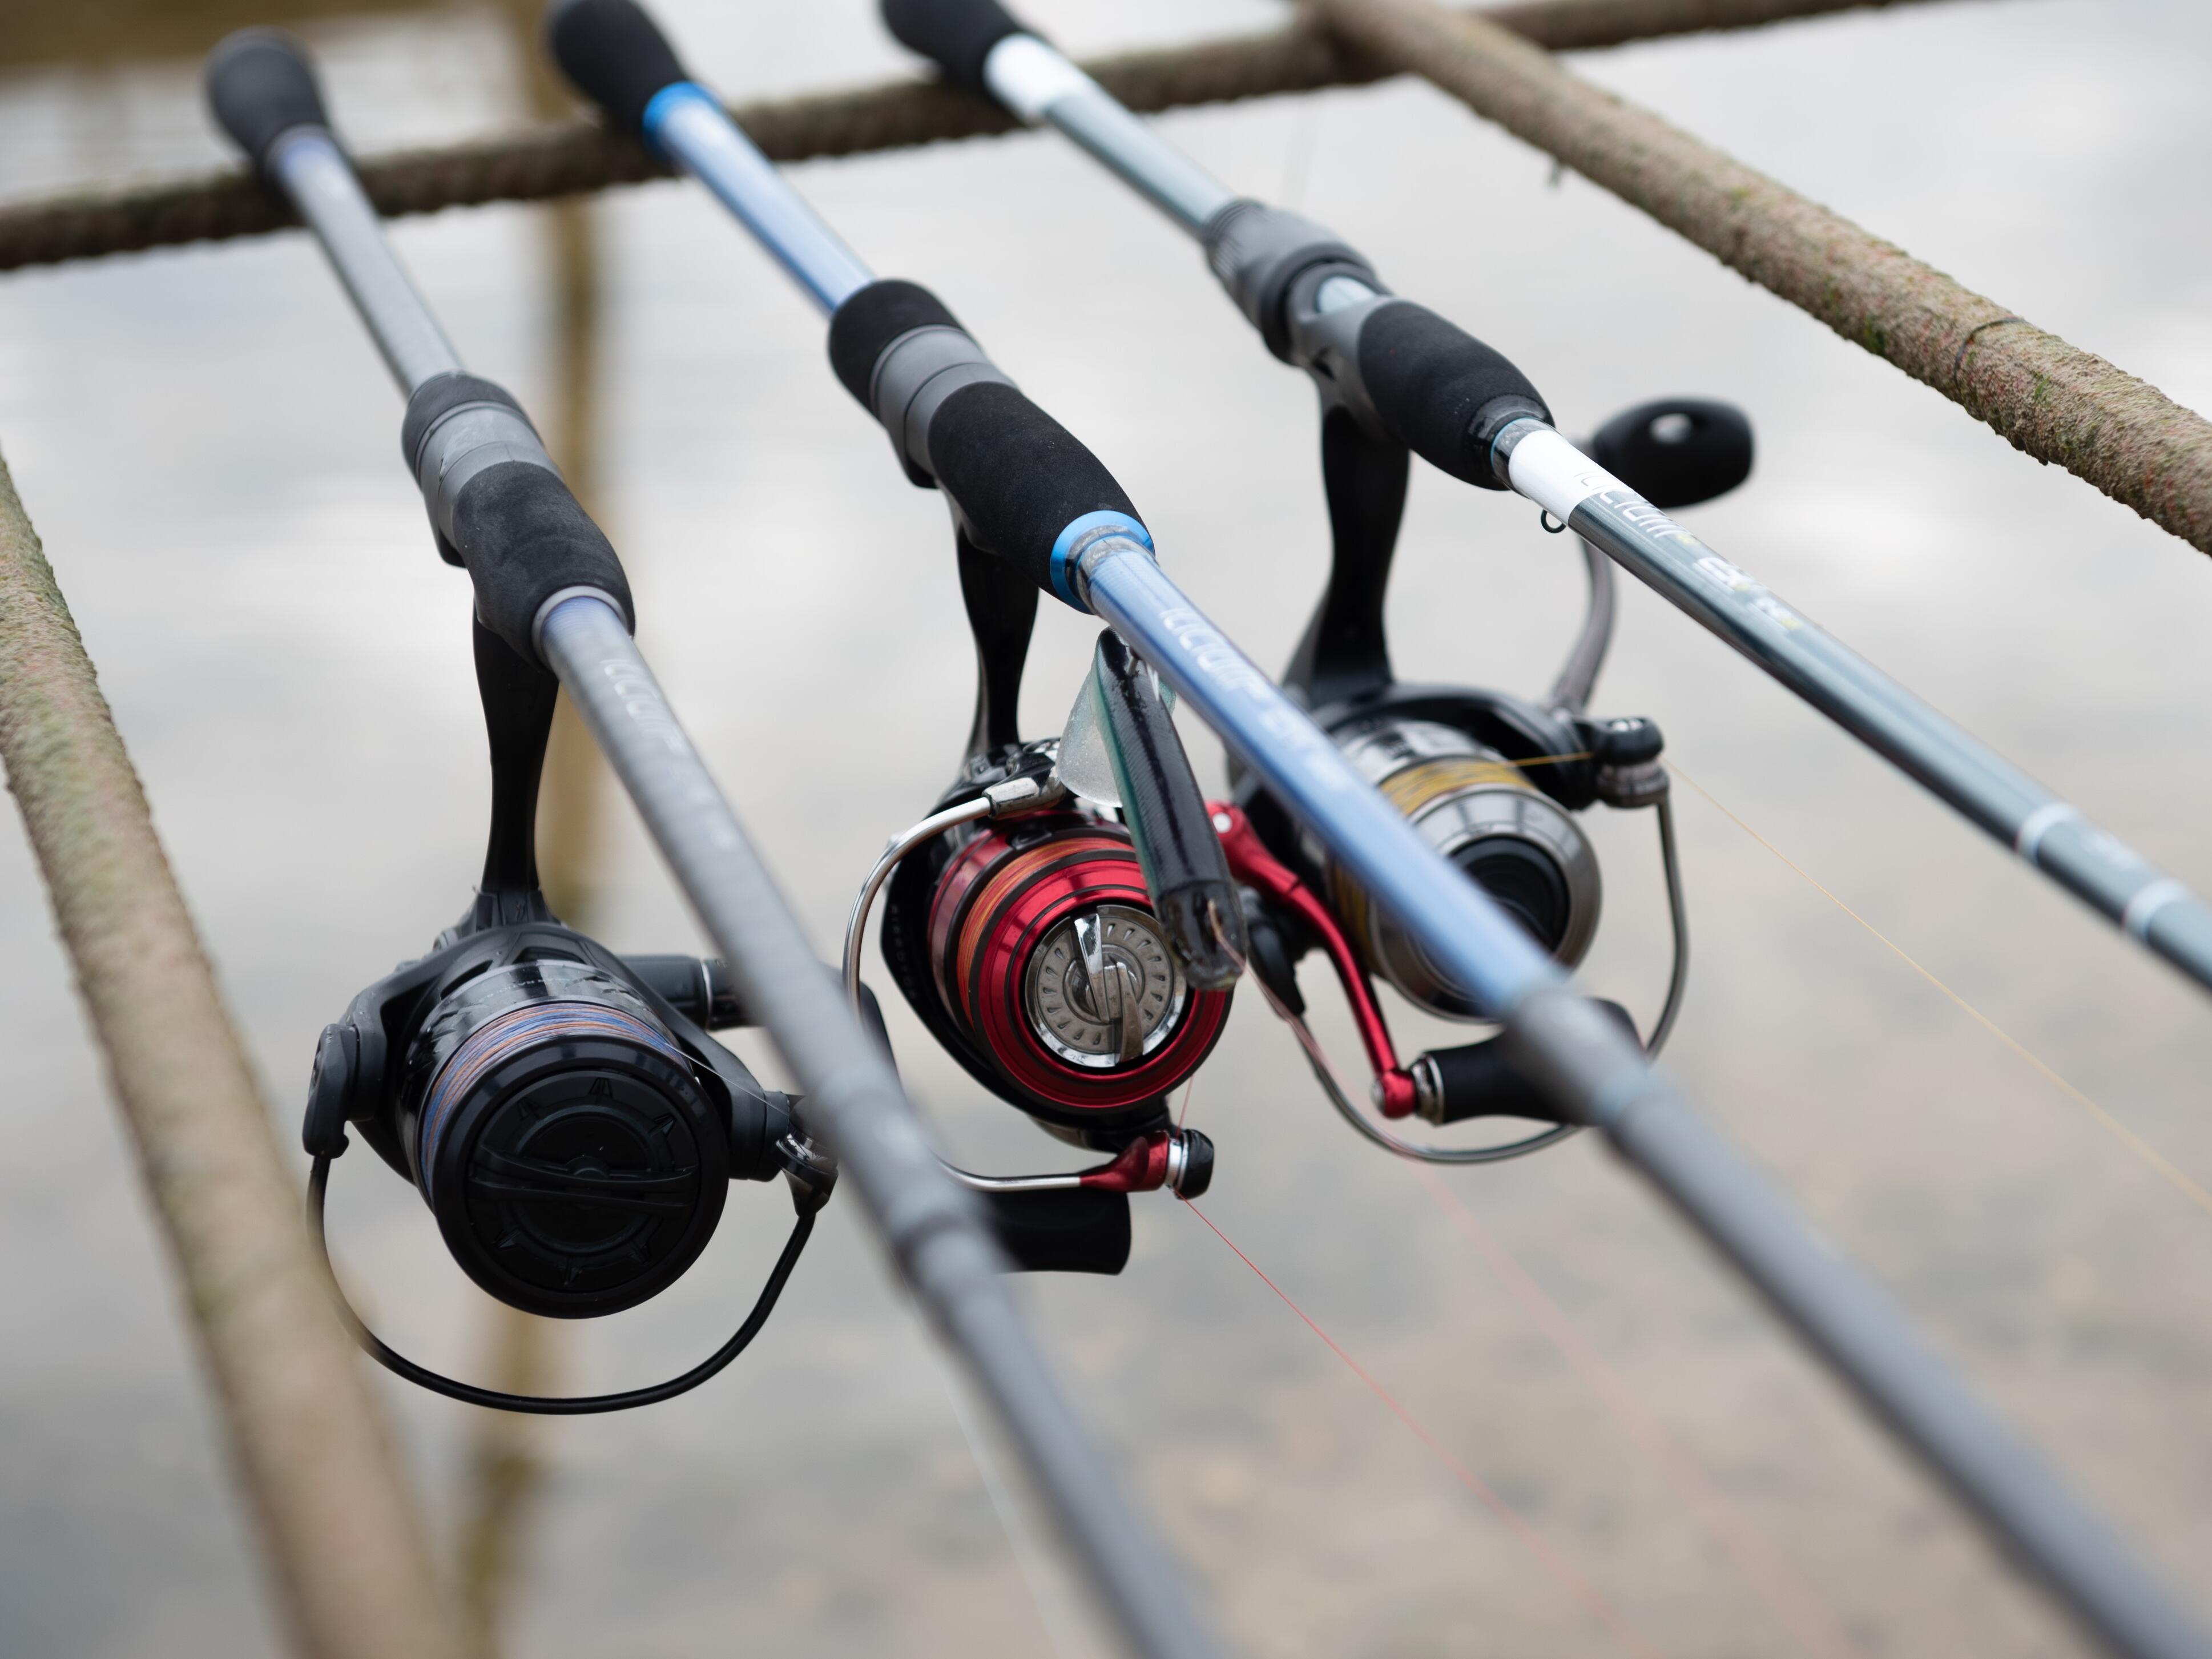 Choisir le bon diamètre de fil pour la pêche au brochet - Leurre de la pêche